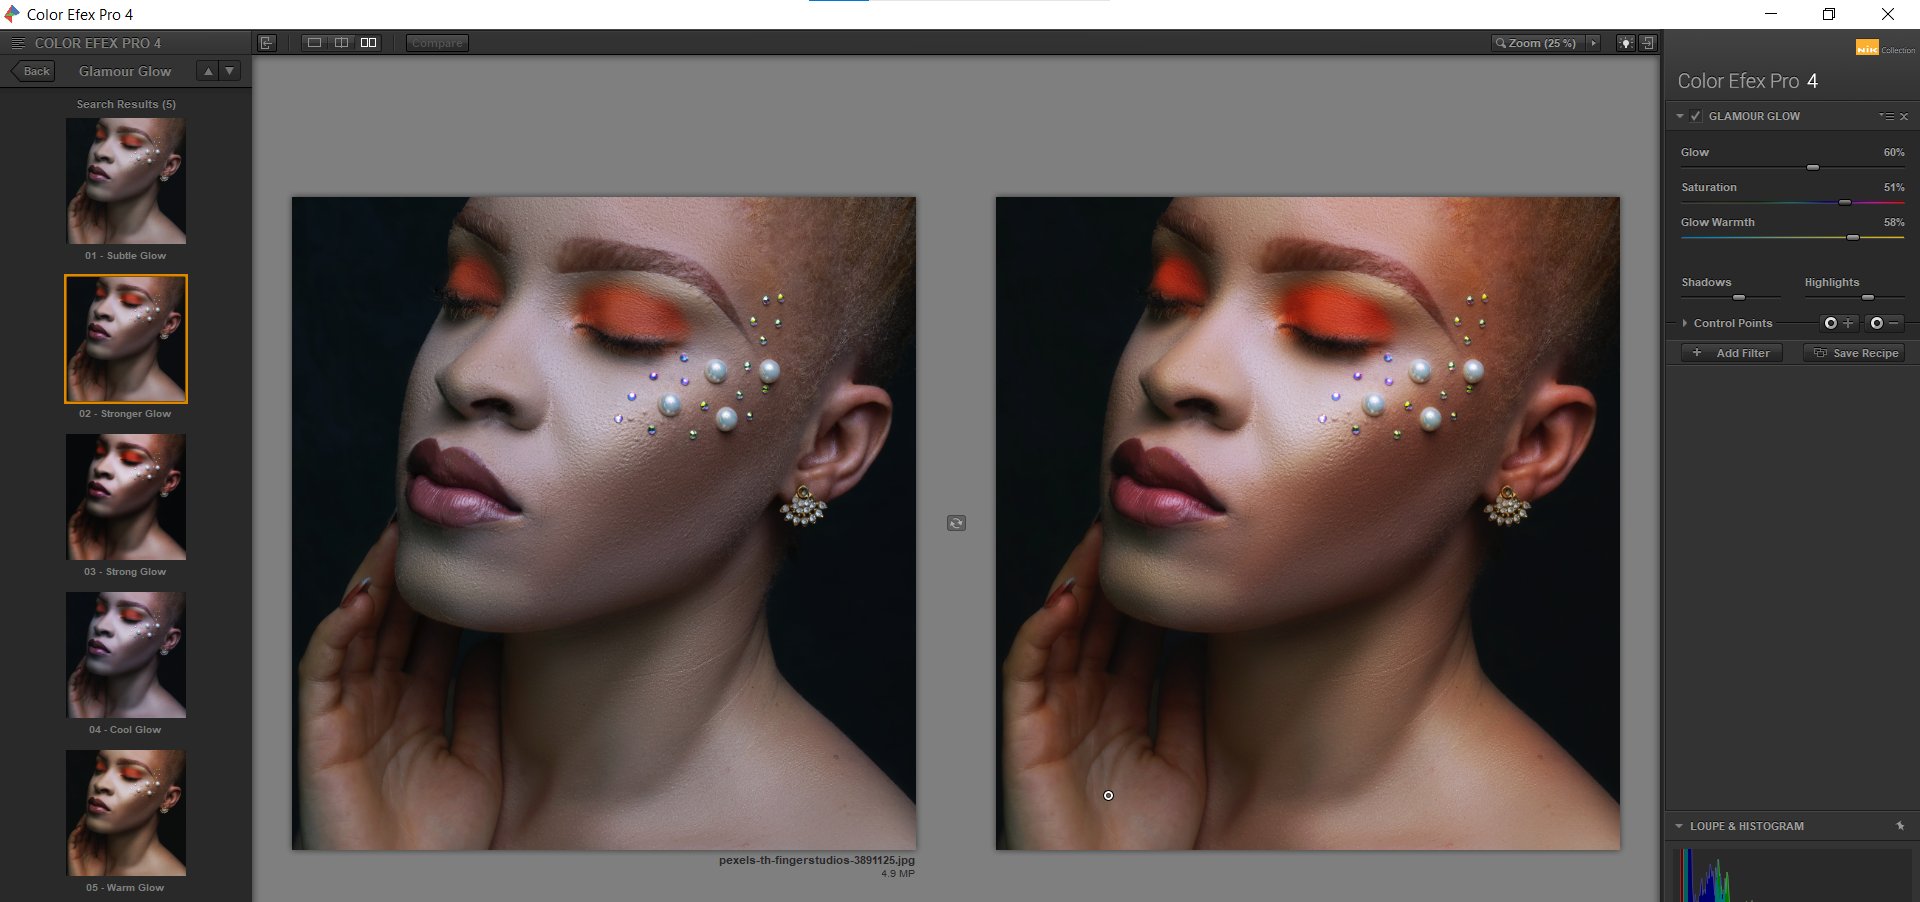 9 Glamour Glow in Color Efex Pro - 10 effetti sorprendenti che puoi applicare usando i plugin Nik con Photoshop